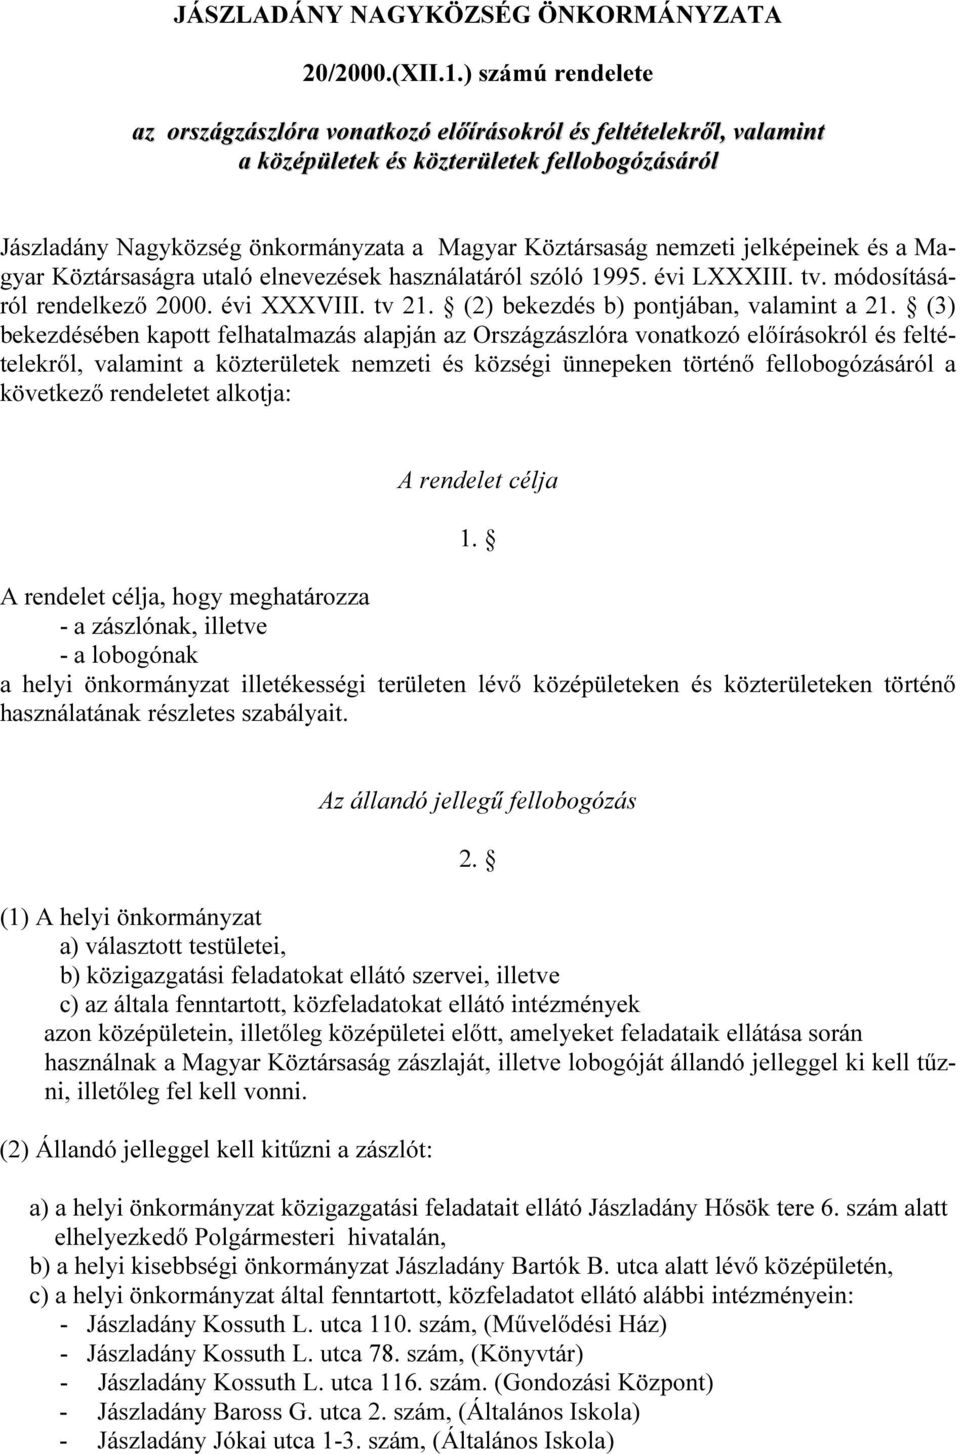 jelképeinek és a Magyar Köztársaságra utaló elnevezések használatáról szóló 1995. évi LXXXIII. tv. módosításáról rendelkező 2000. évi XXXVIII. tv 21. (2) bekezdés b) pontjában, valamint a 21.